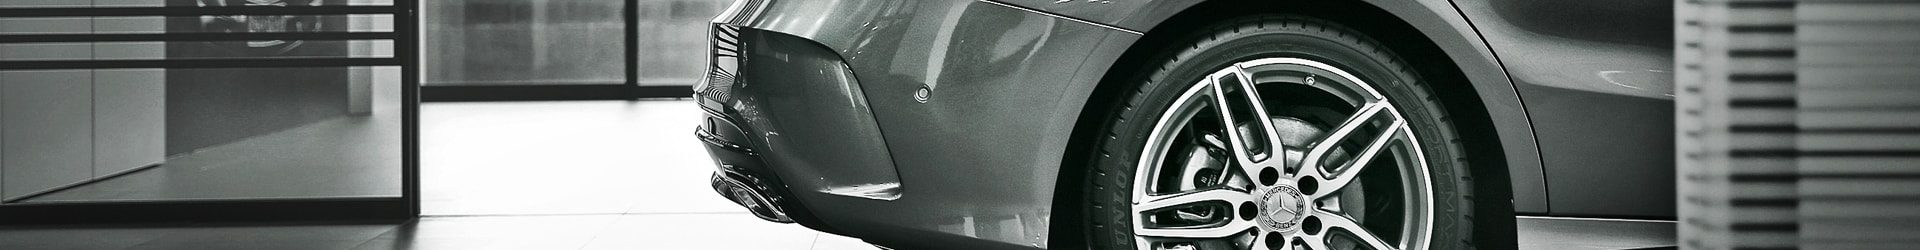 –吸睛特異– Chrysler Prowler 山貓 開箱拍攝